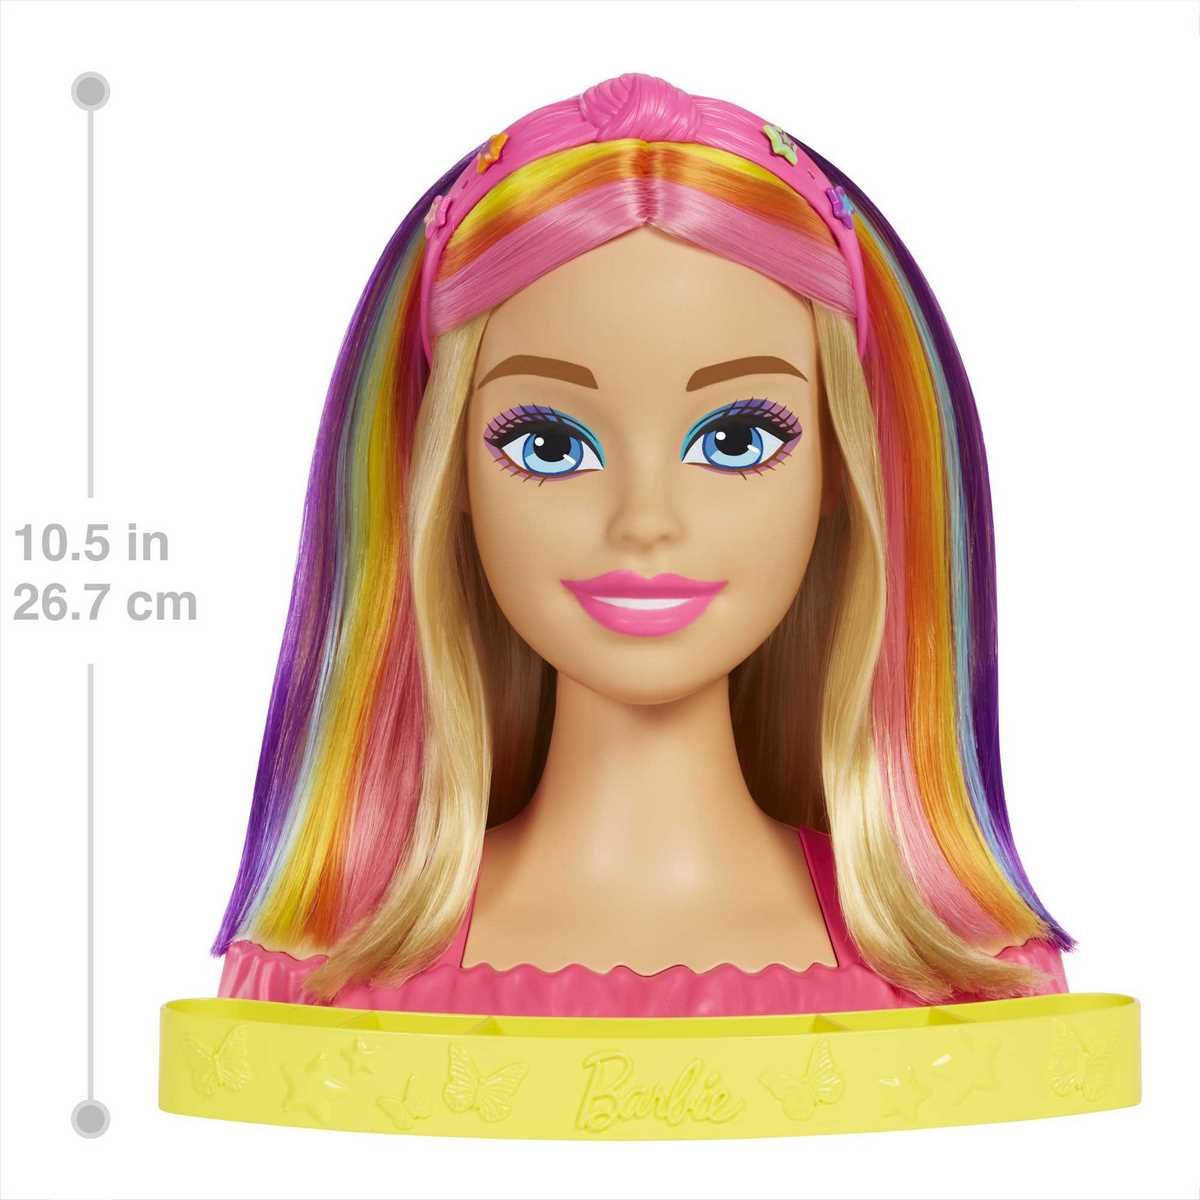 Barbie ultra chevelure blonde - BARBIE